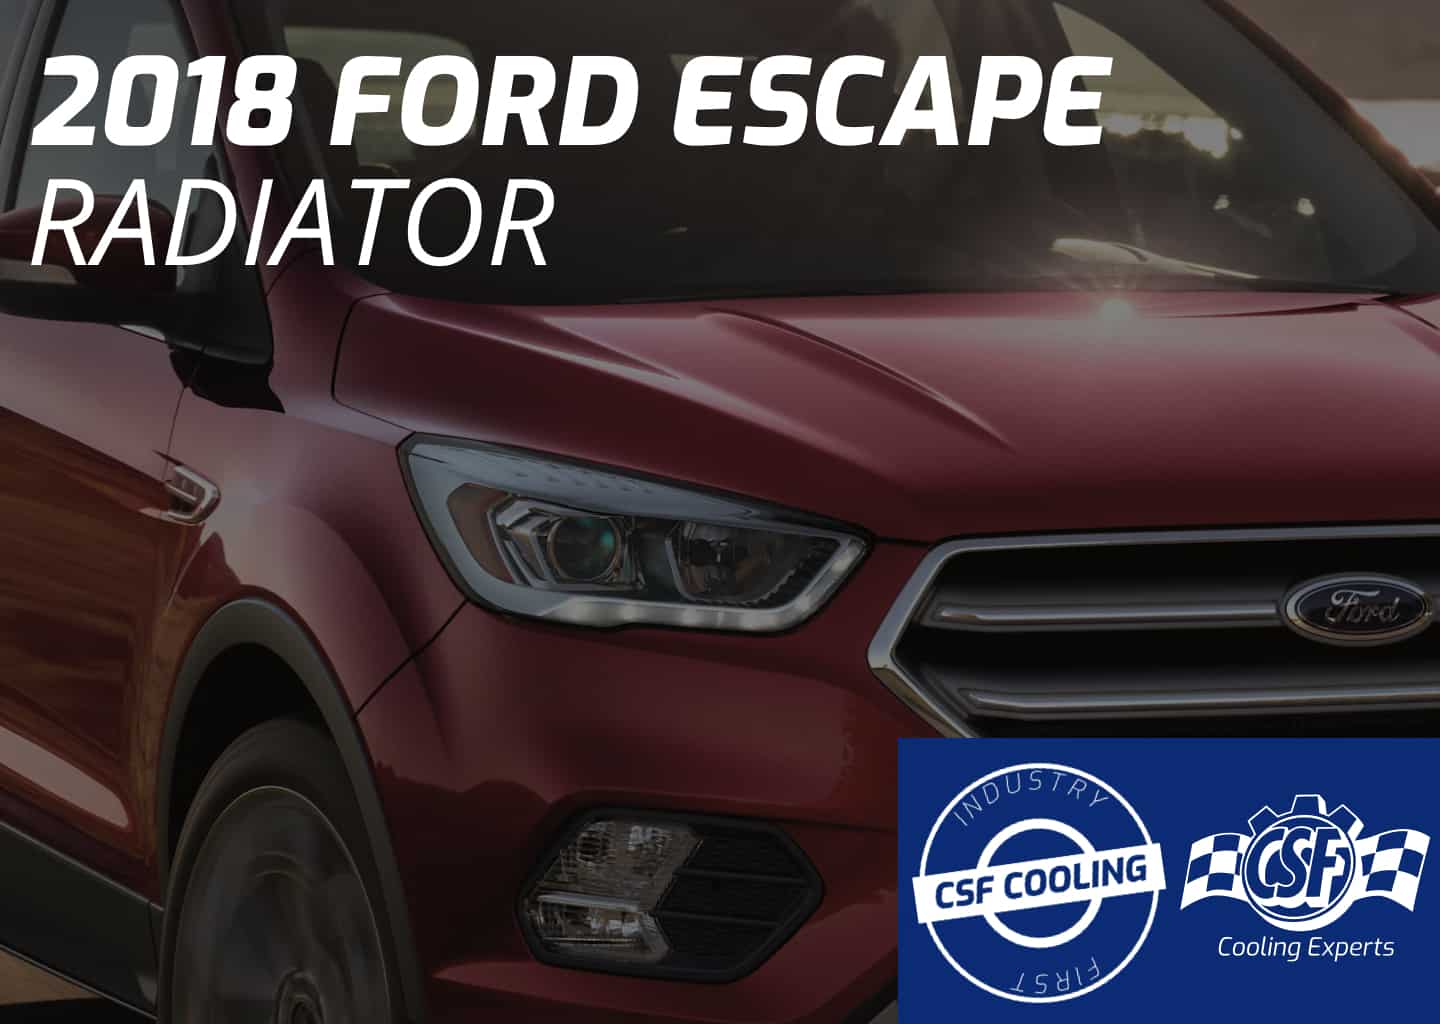 2018 Ford Escape Radiator